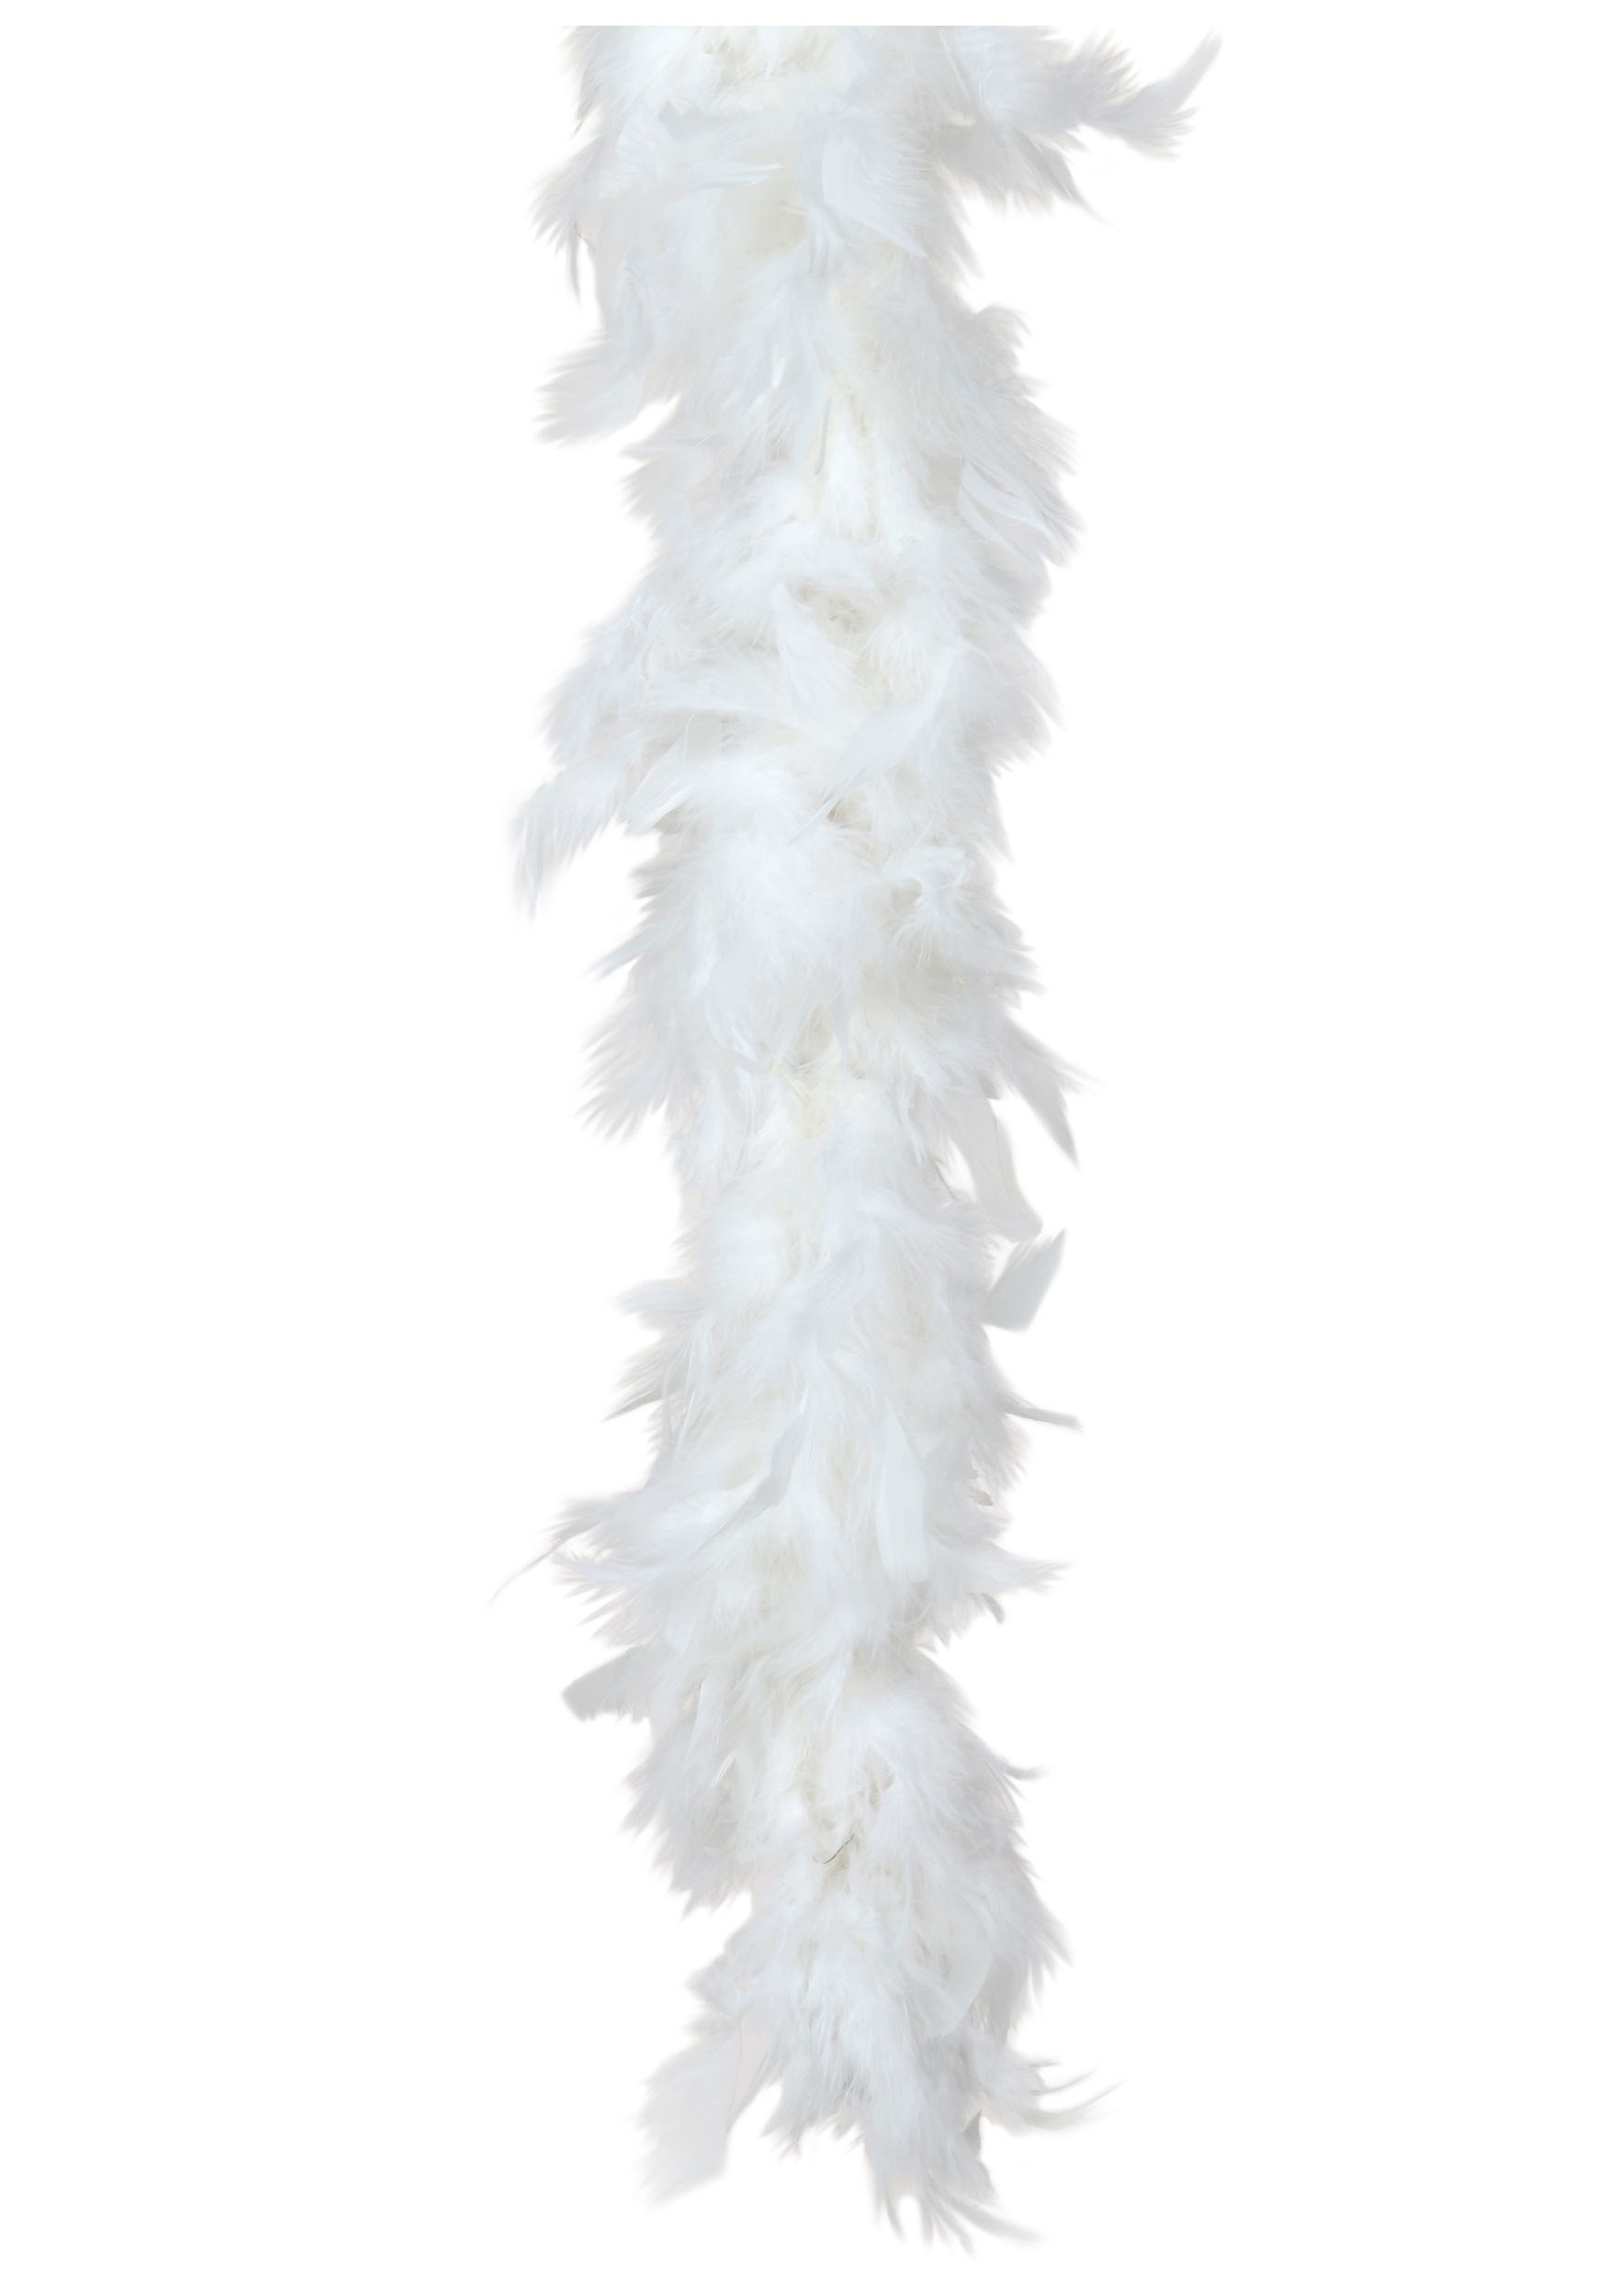 Boa de plumas de avestruz blanca de 3 capas y 1,5 M de largo, alta calidad  A ESTRENAR -  México